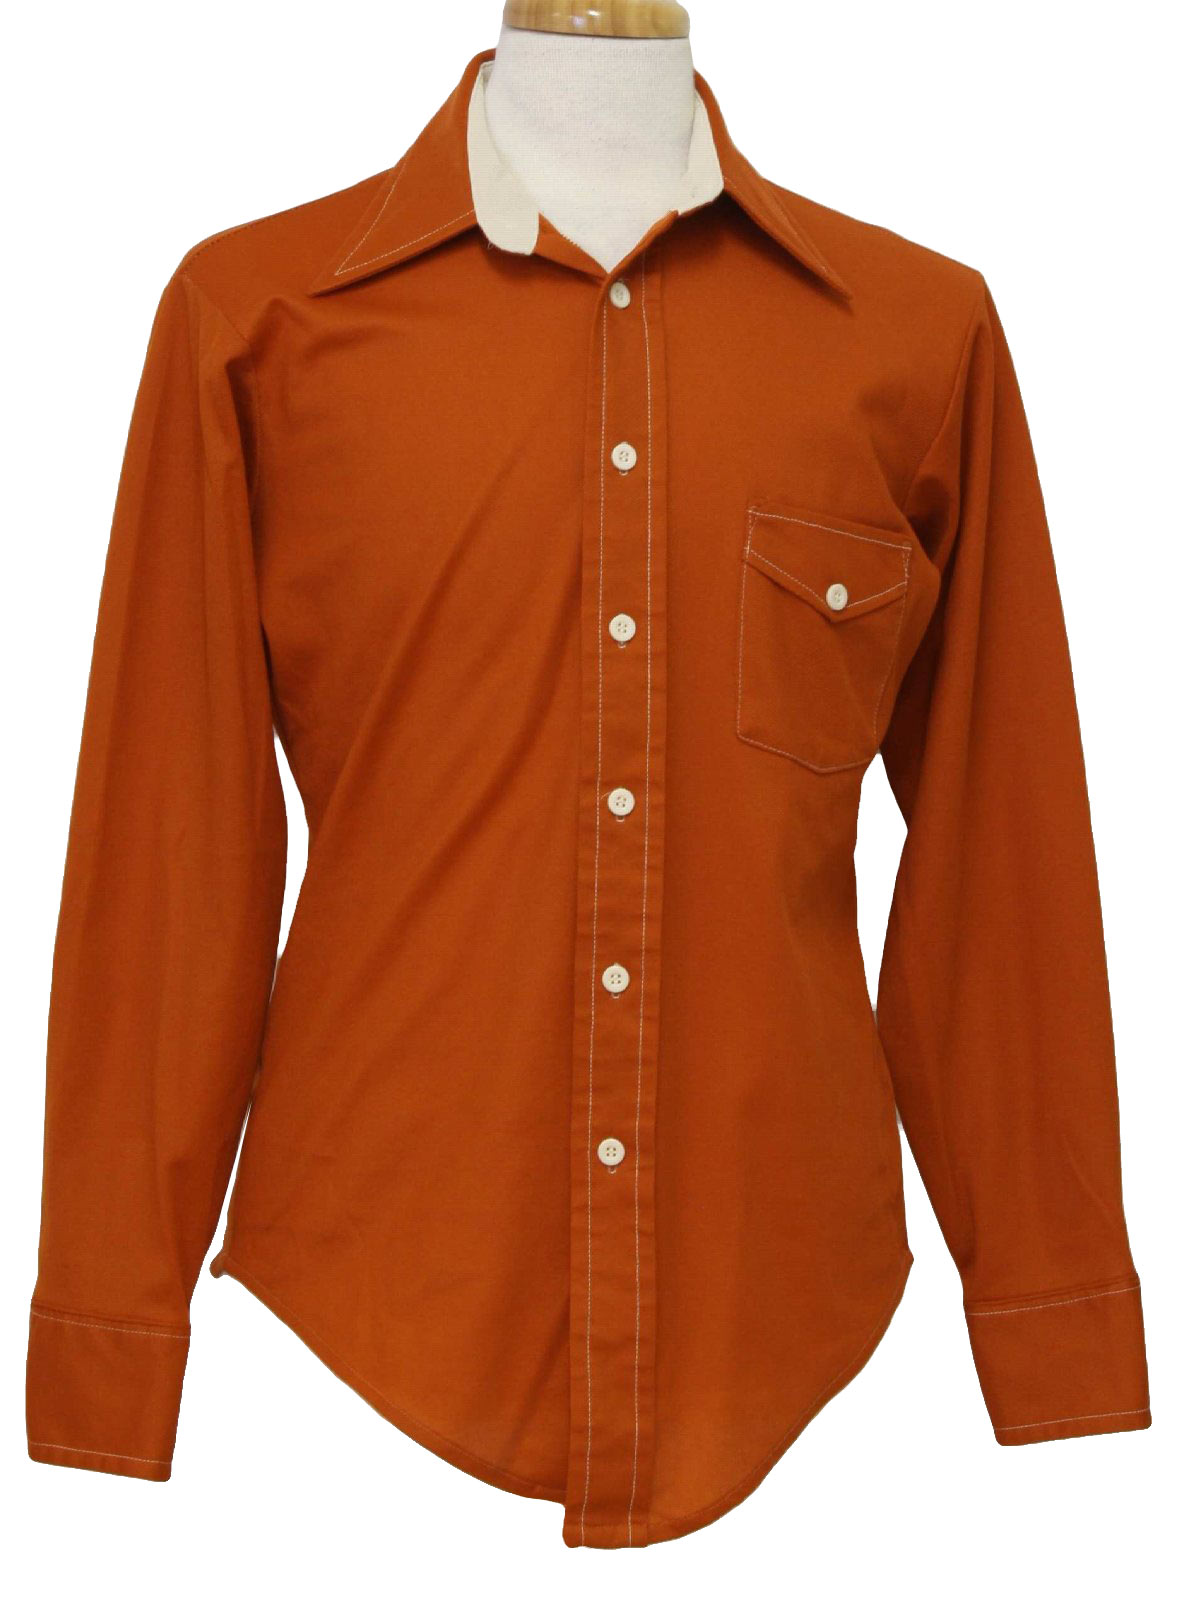 Retro 1970's Shirt (Van Heusen) : 70s -Van Heusen- Mens rust and white ...